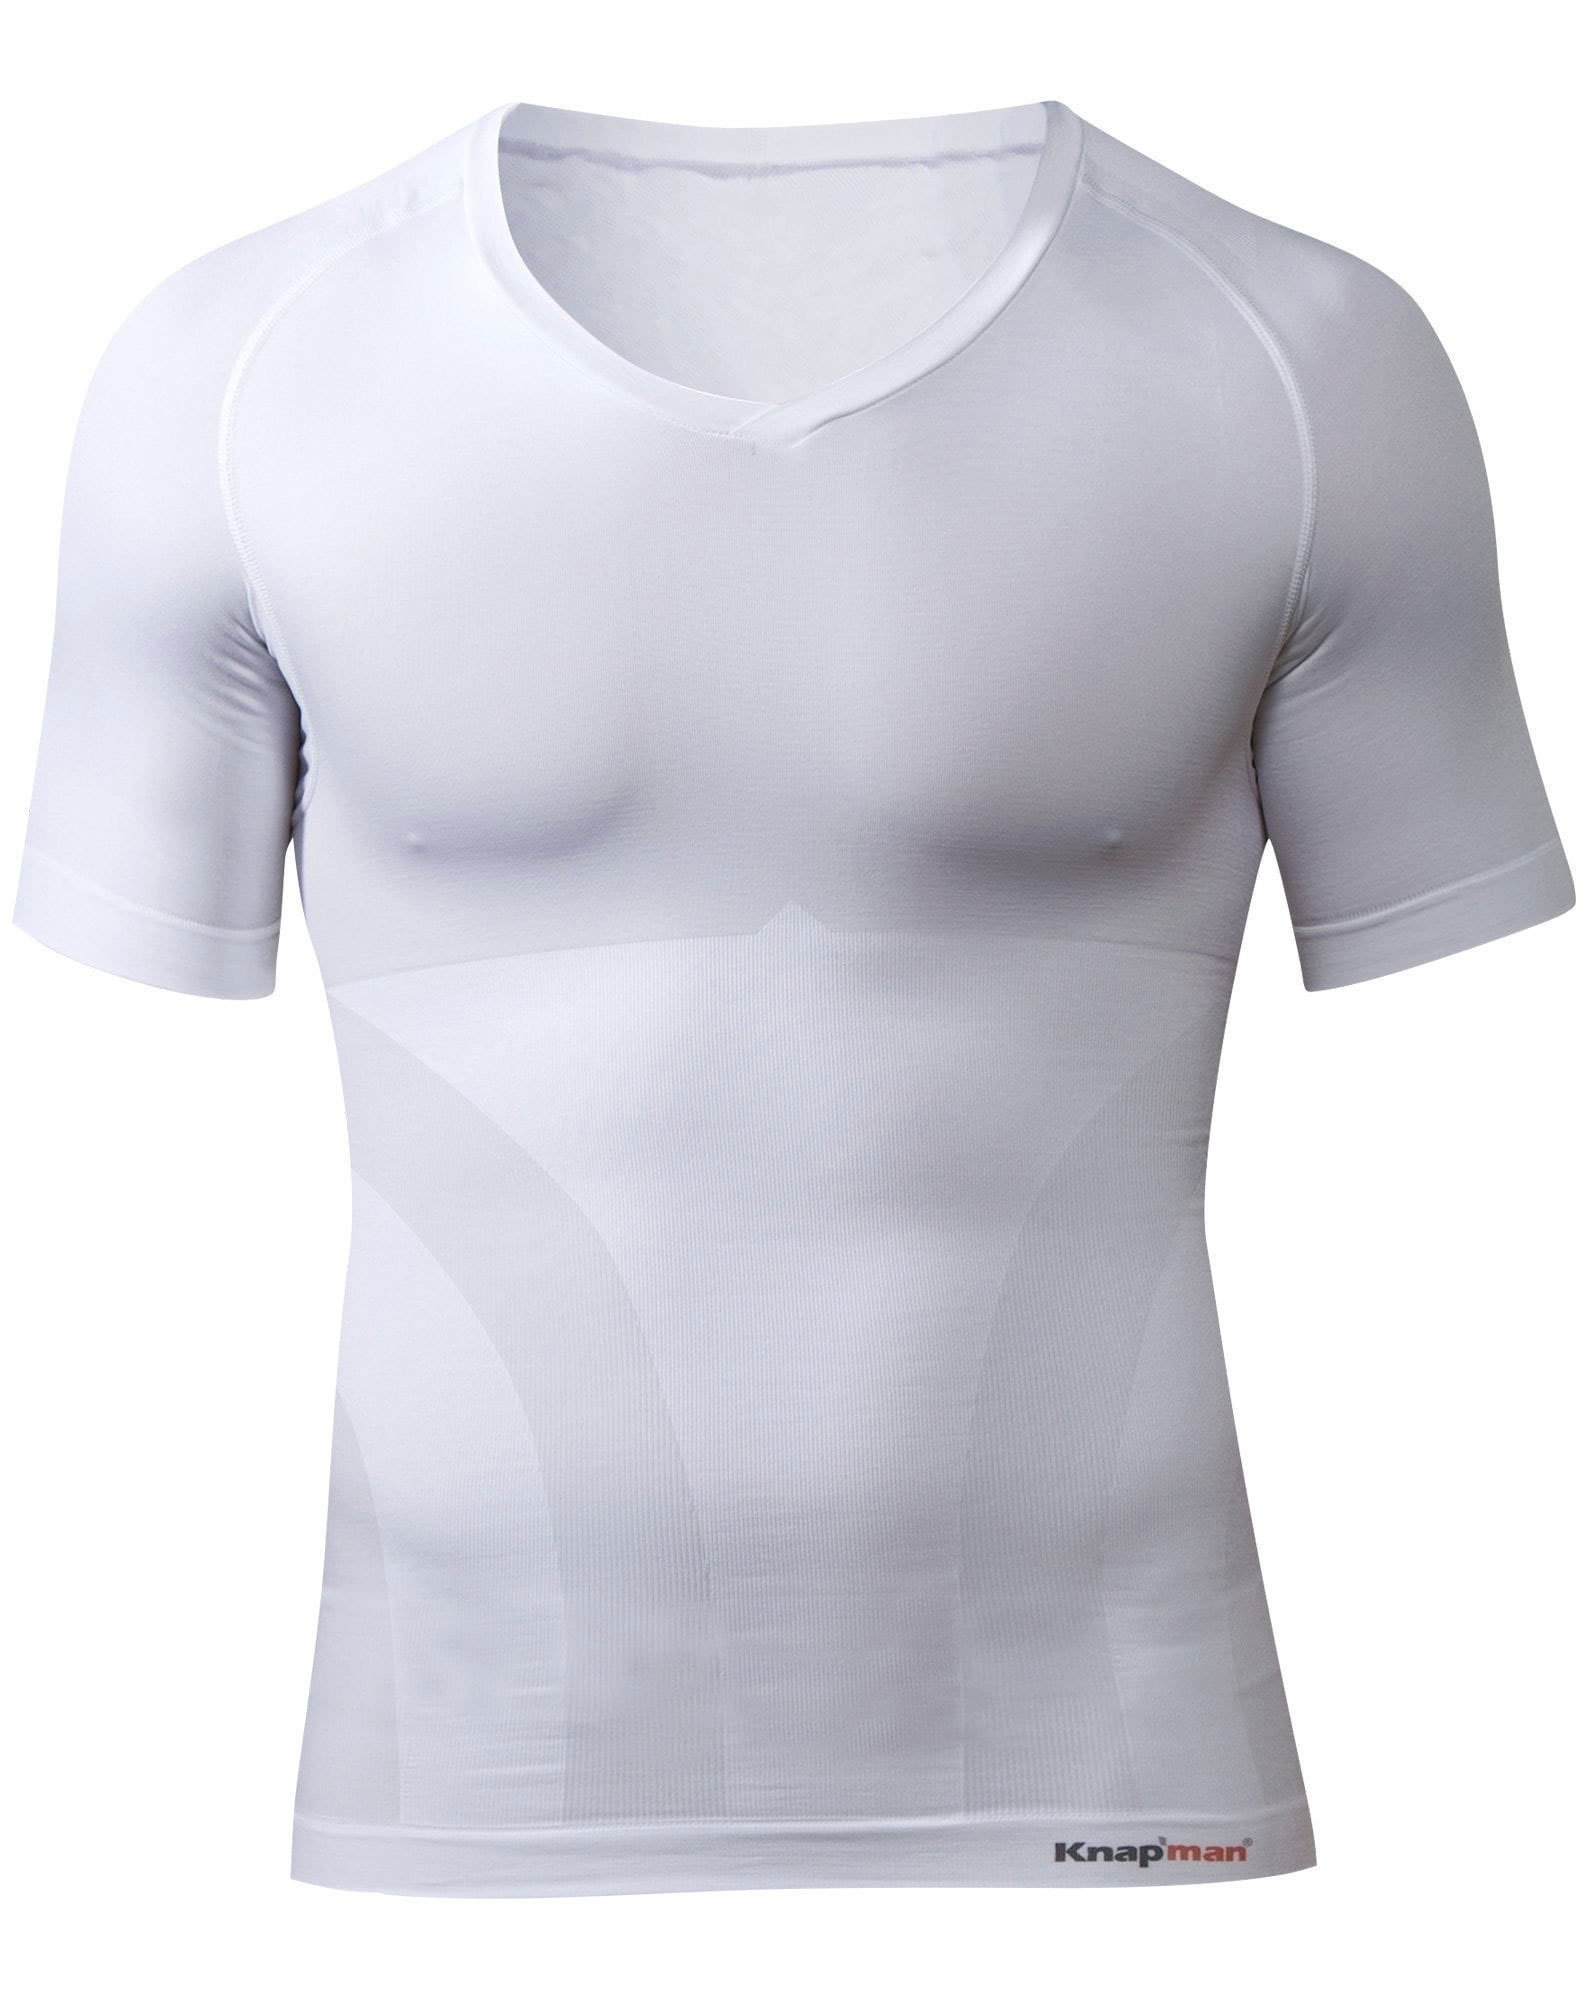 Knap'man Zoned Cotton Comfort shirt weiss